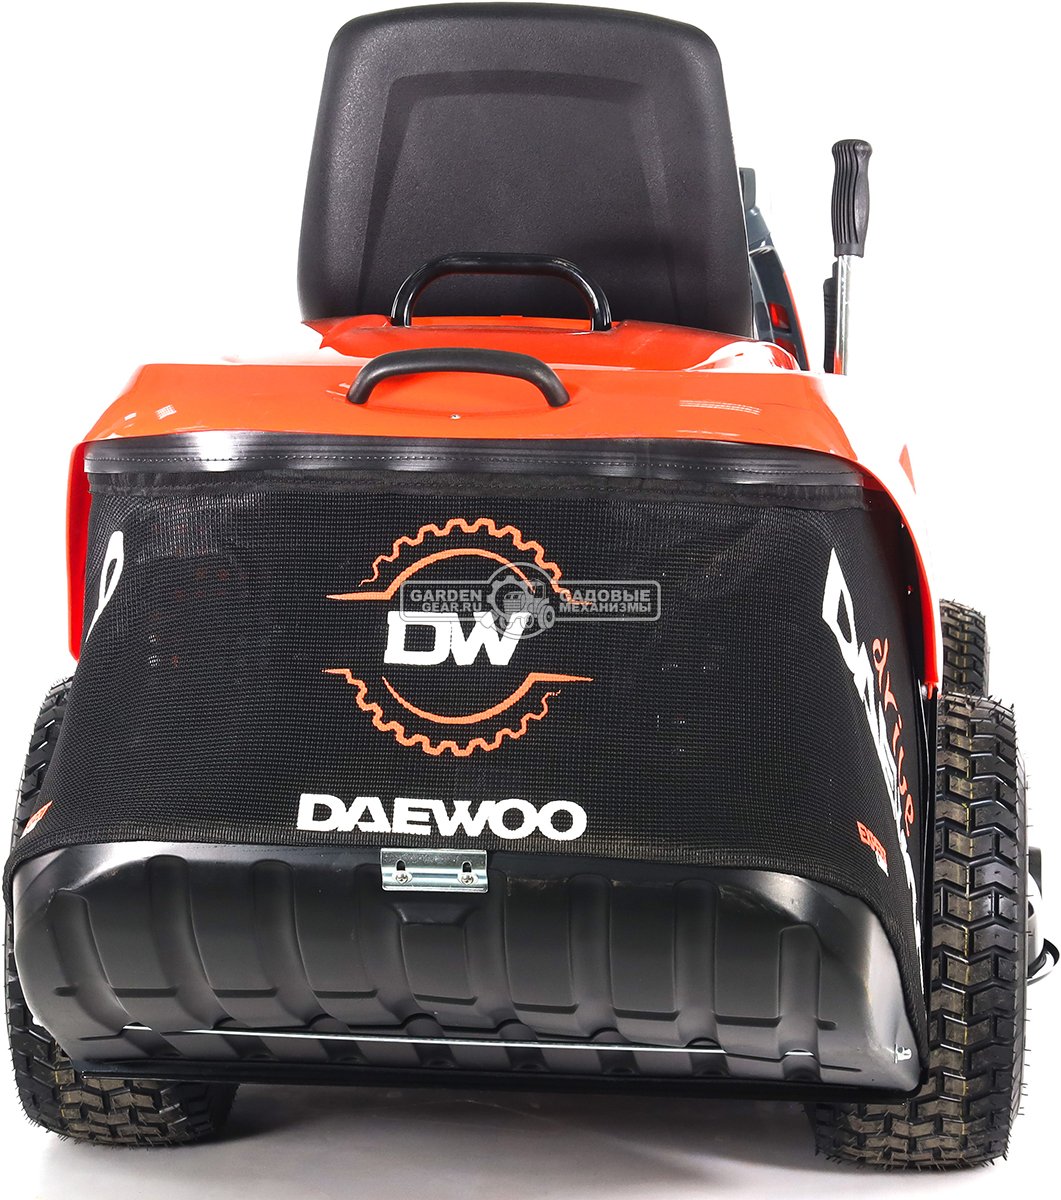 Садовый трактор Daewoo DWT 1020 (PRC, Daewoo, 452 куб.см., гидростатика, травосборник 270 л, ширина кошения 102 см, 220 кг)